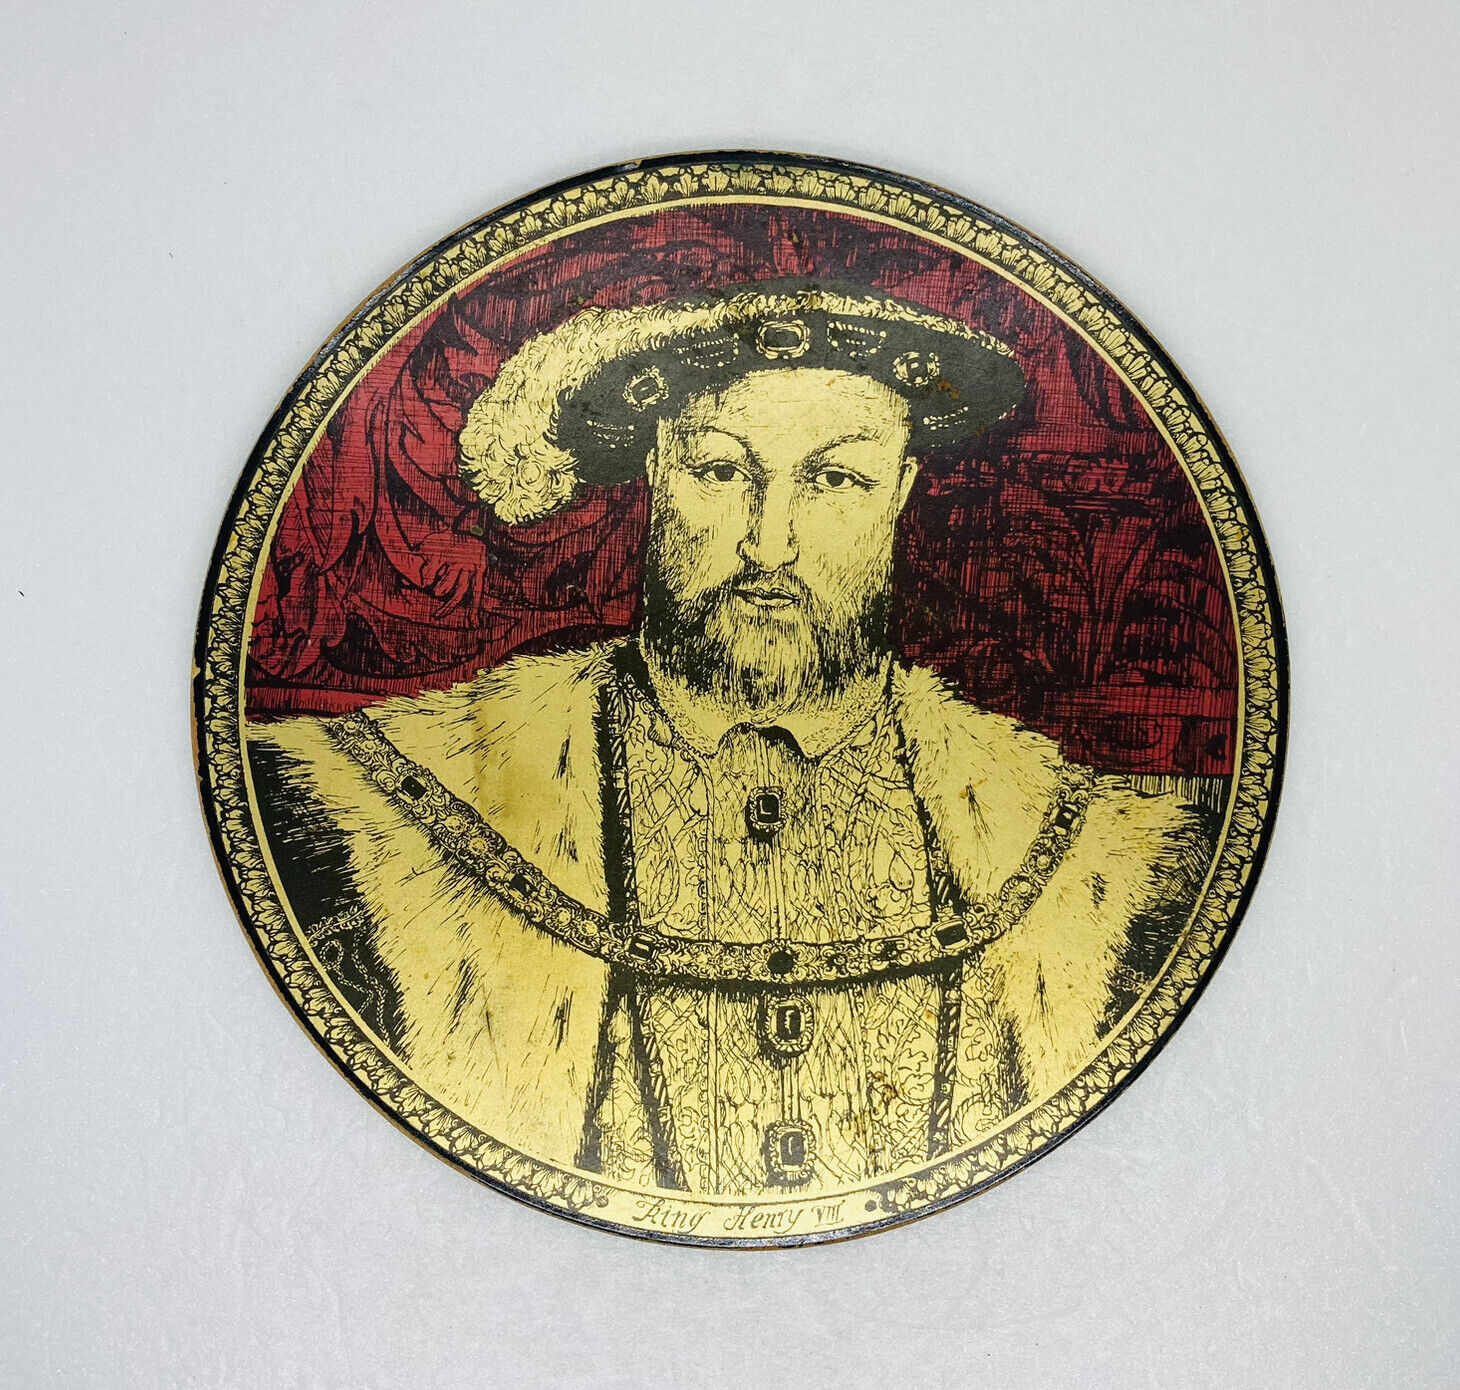 Vintage King Henry VIII Design Drinking Coaster Wood Cork Back 8.5” Decor BB